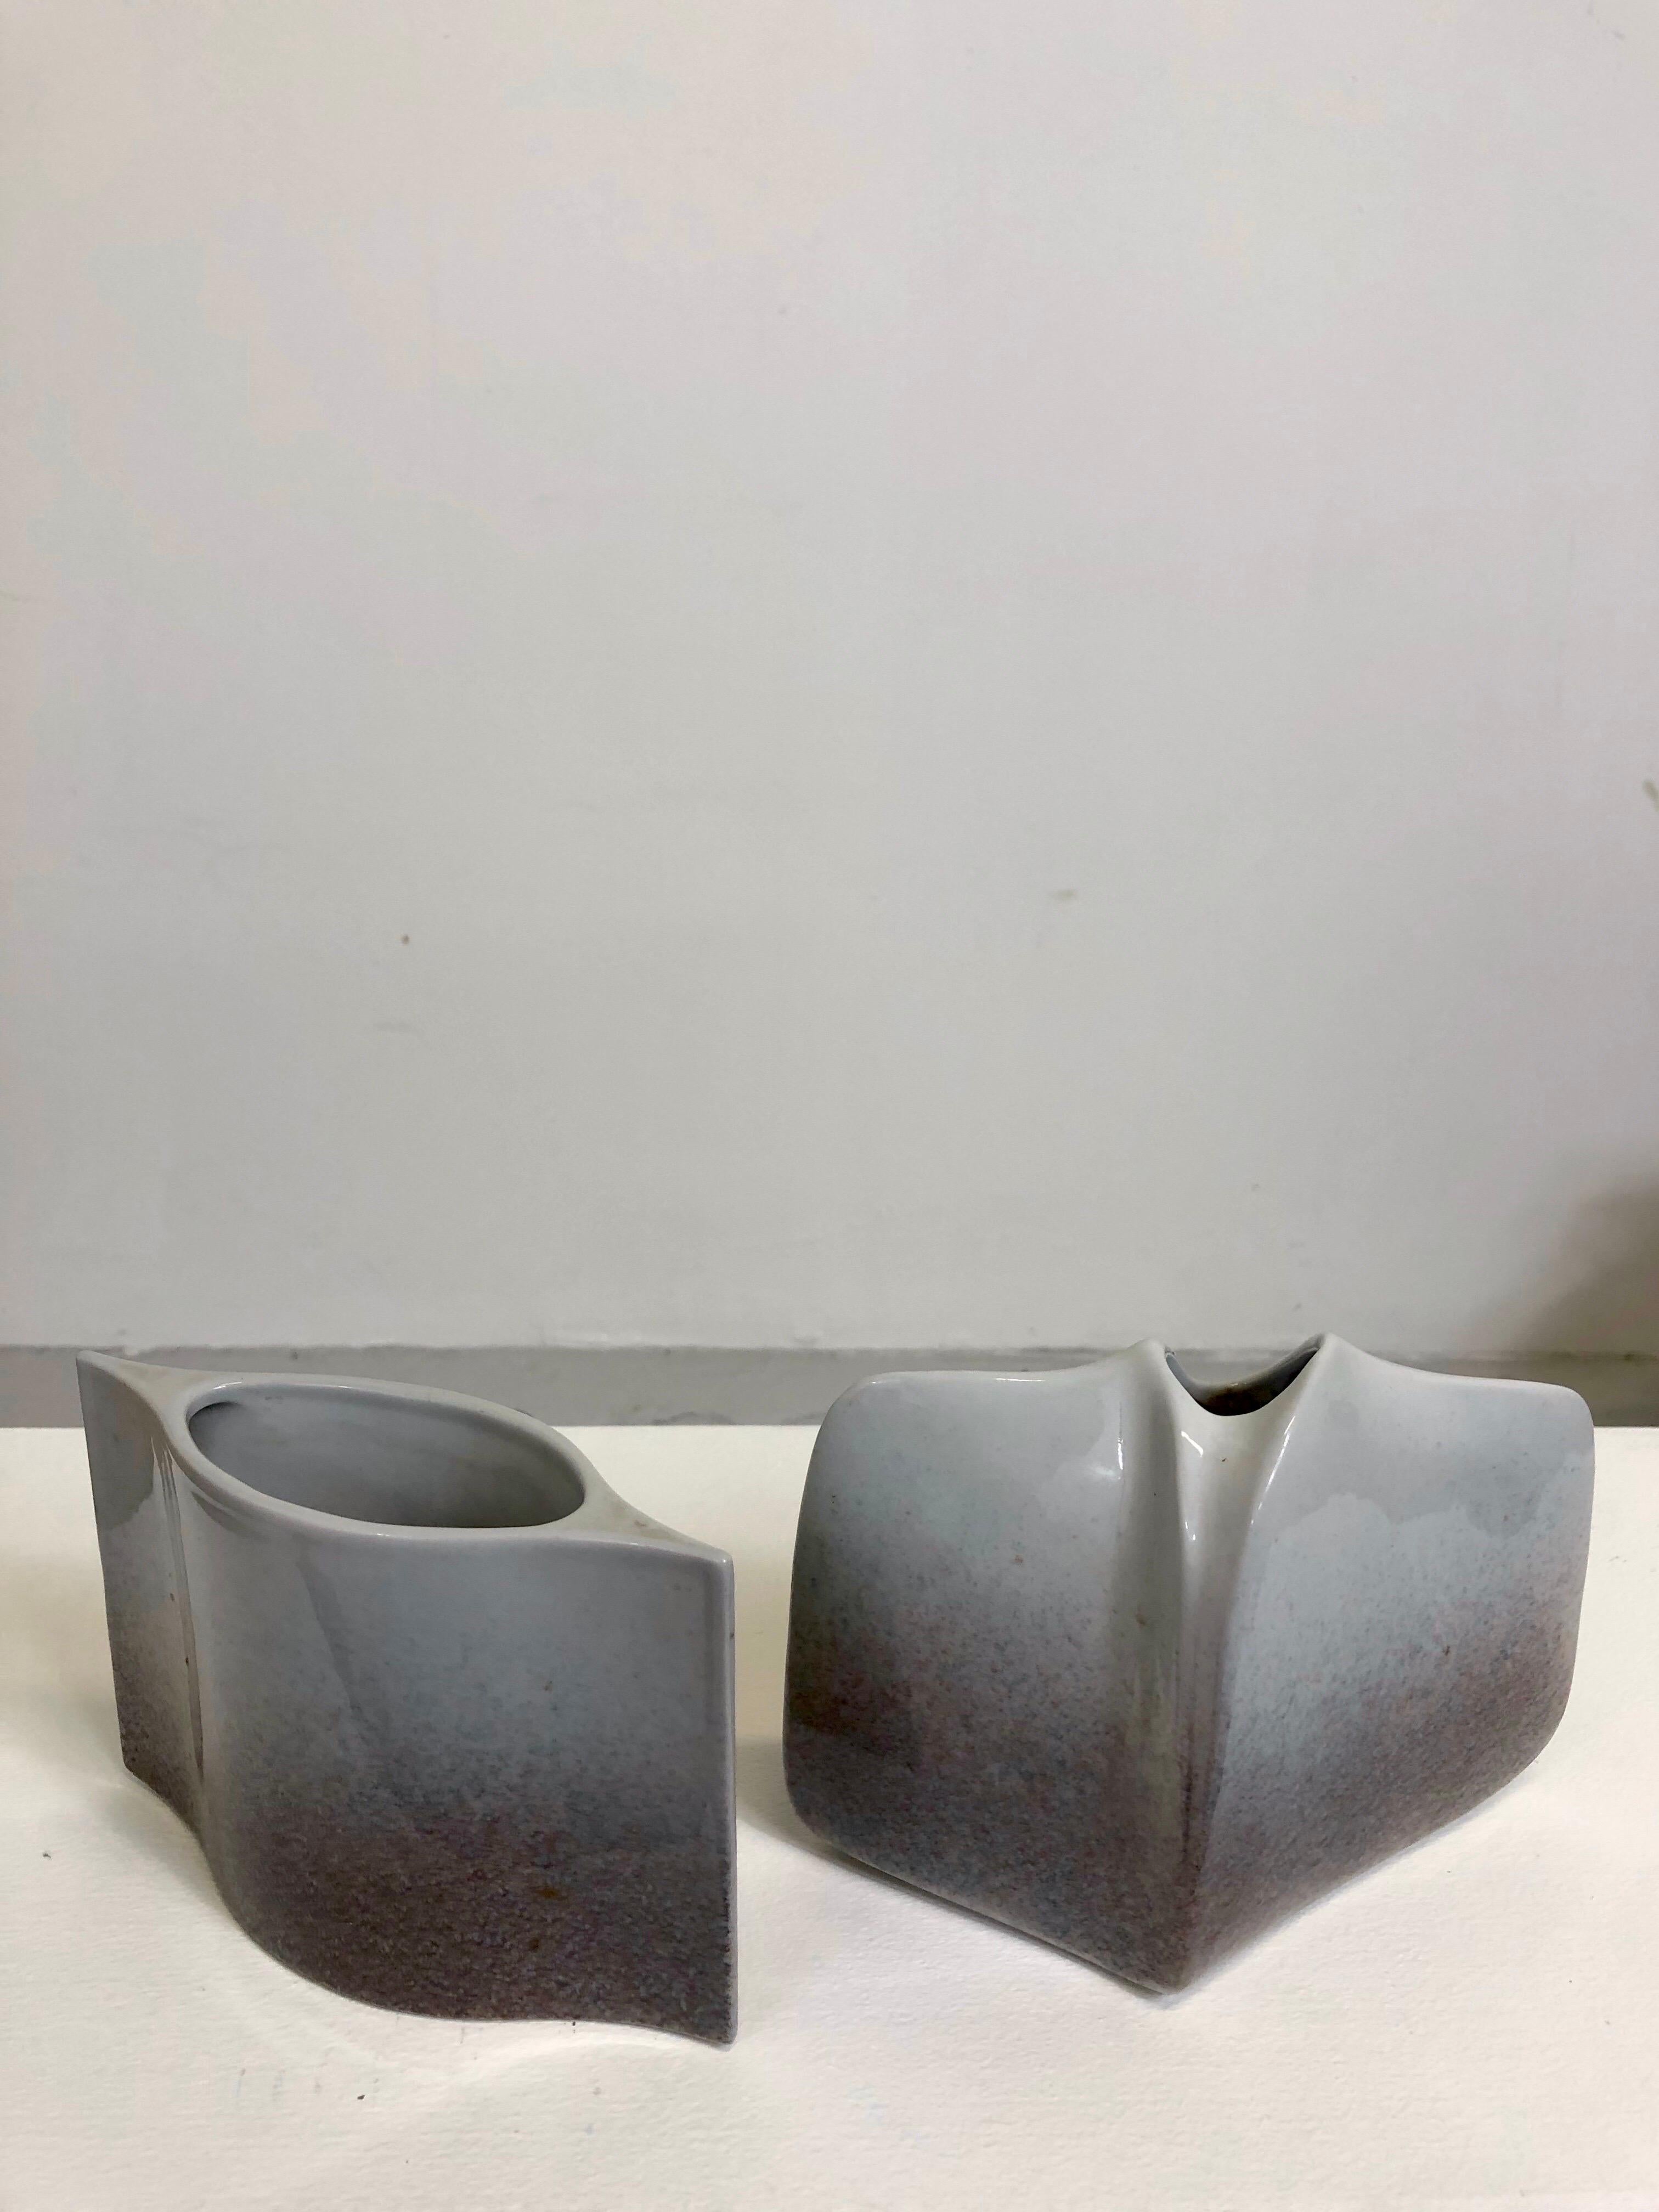 Un ensemble de deux vases en porcelaine par Yves Mohy pour Virebent.

Conditions d'origine parfaites,
vers 1970.
Signé sous la base.

Vase 1 : H : 10 cms/ P : 5 cms/ W : 15 cms.
Vase 2 : H : 12 cms/ P : 6 cms/ W : 16 cms.